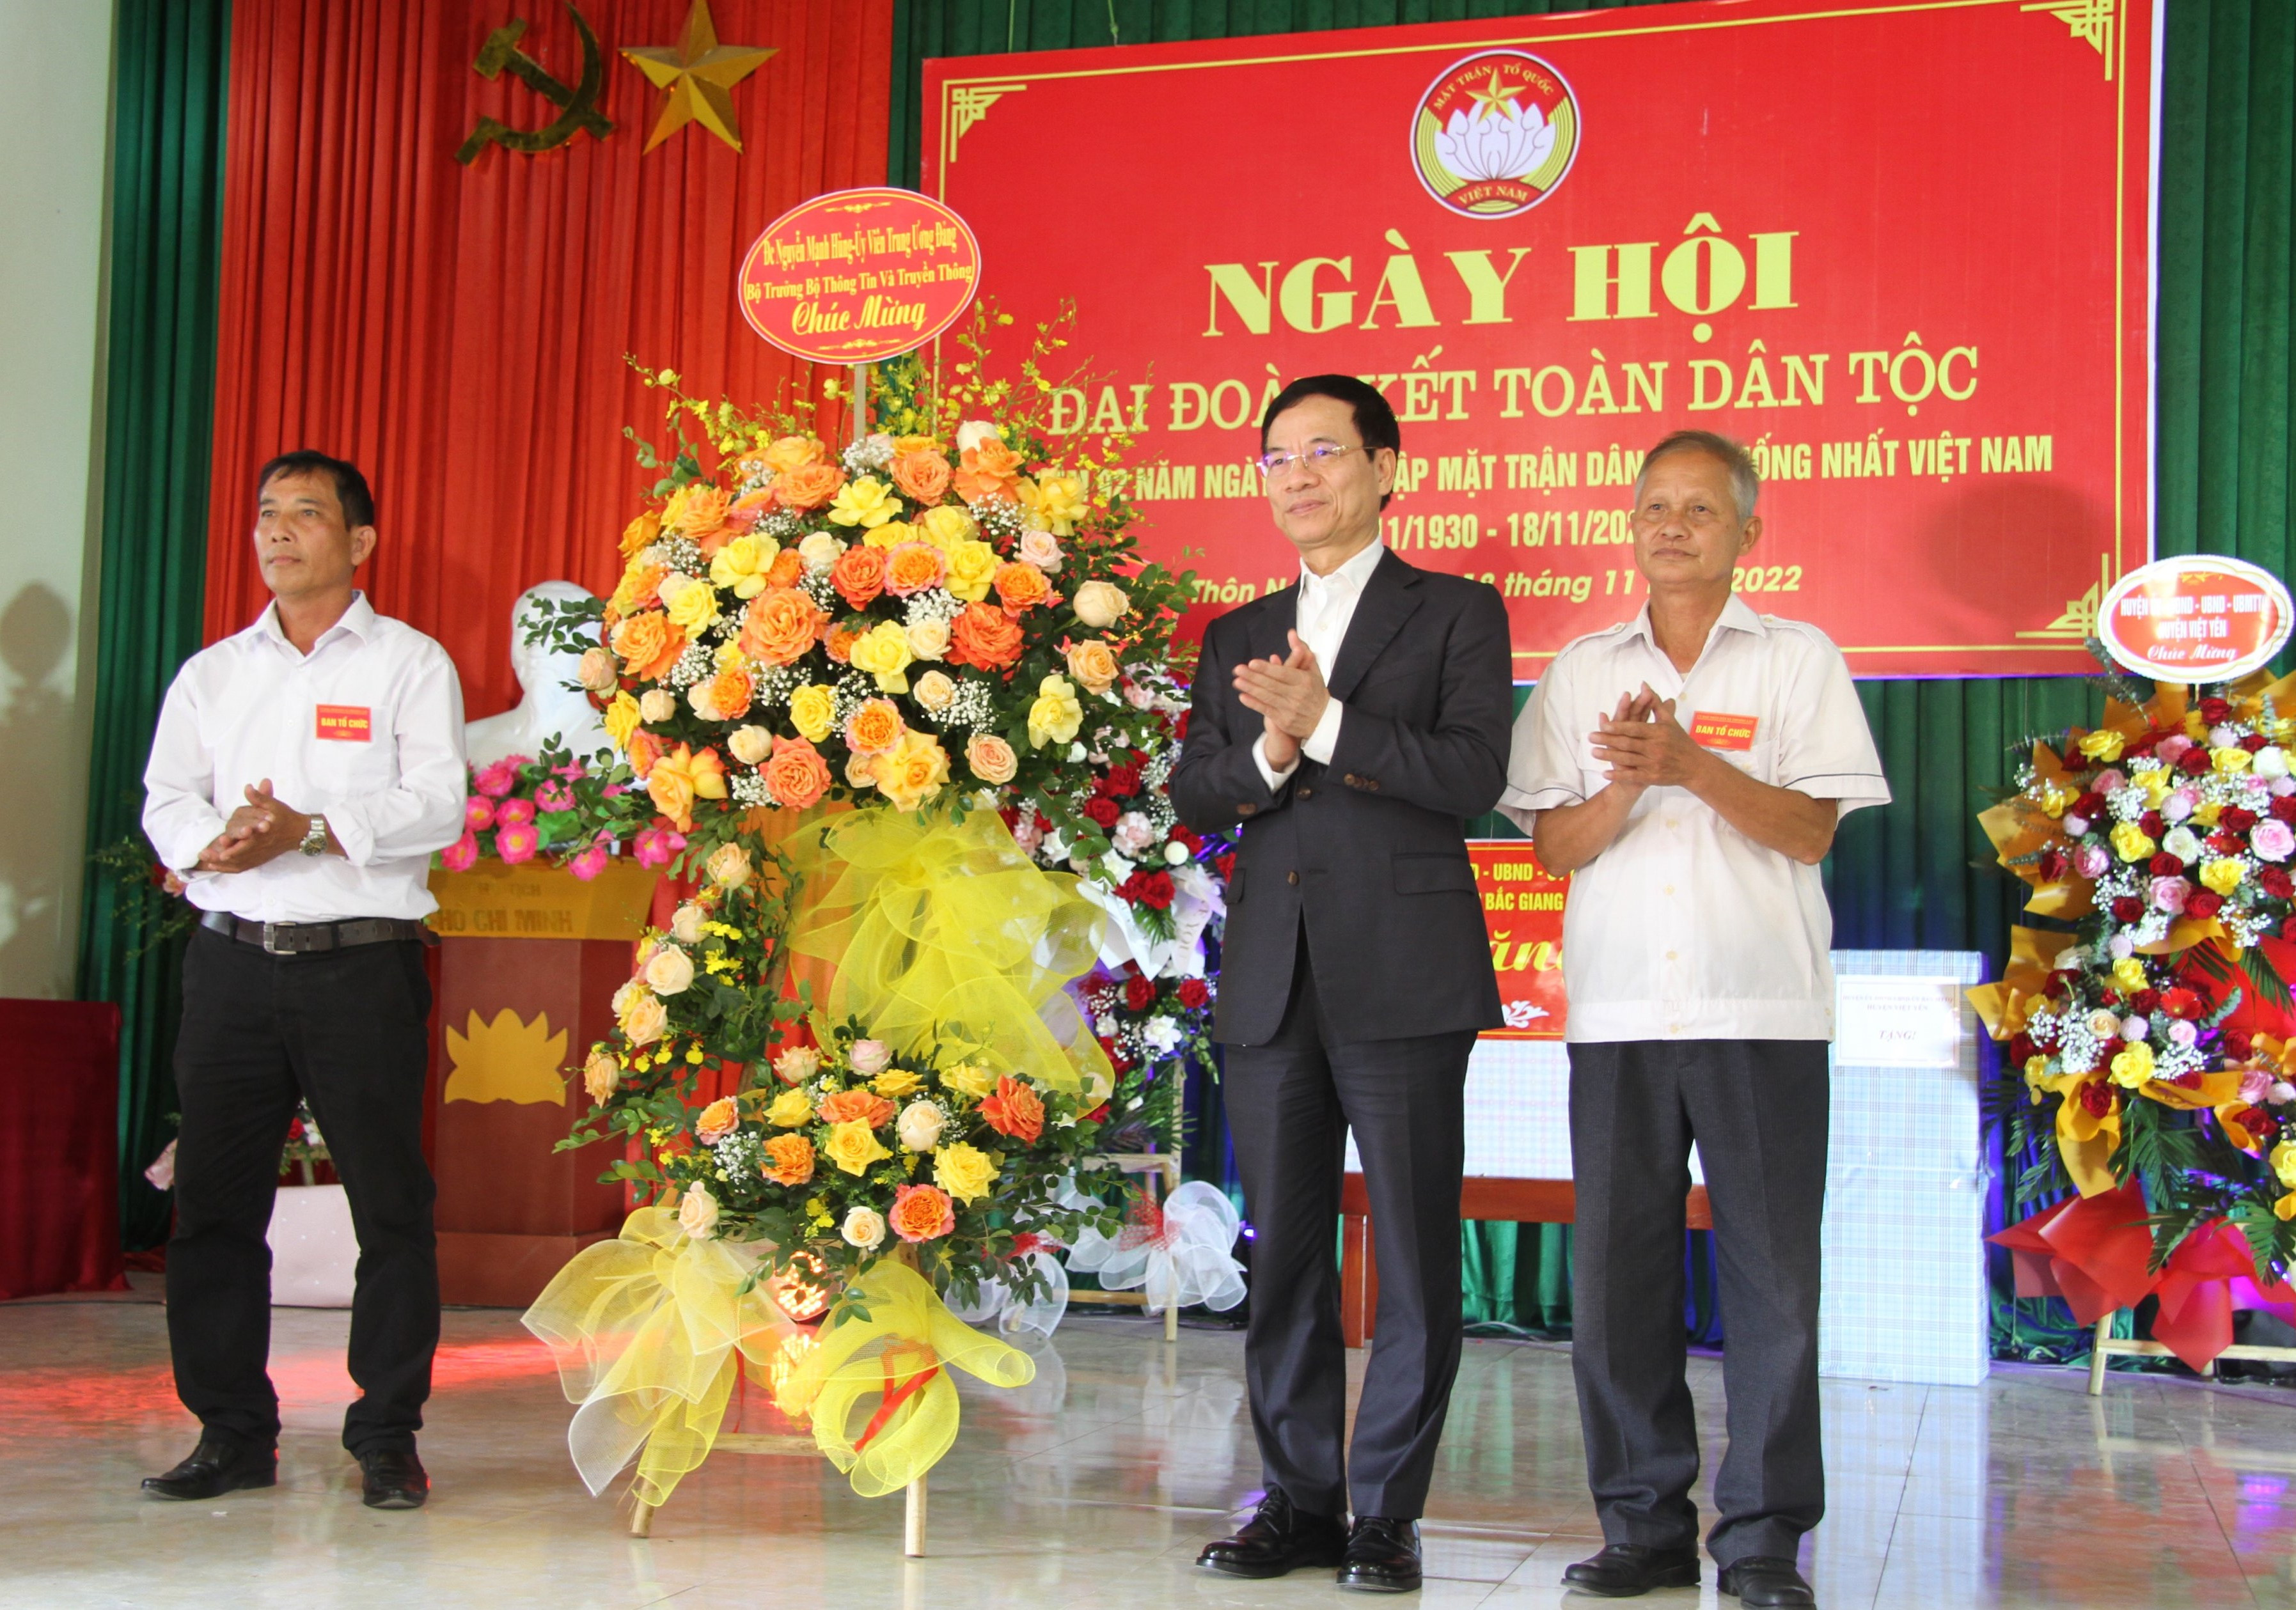 Bộ trưởng Nguyễn Mạnh Hùng dự Ngày hội Đại đoàn kết toàn dân tộc tại Bắc Giang